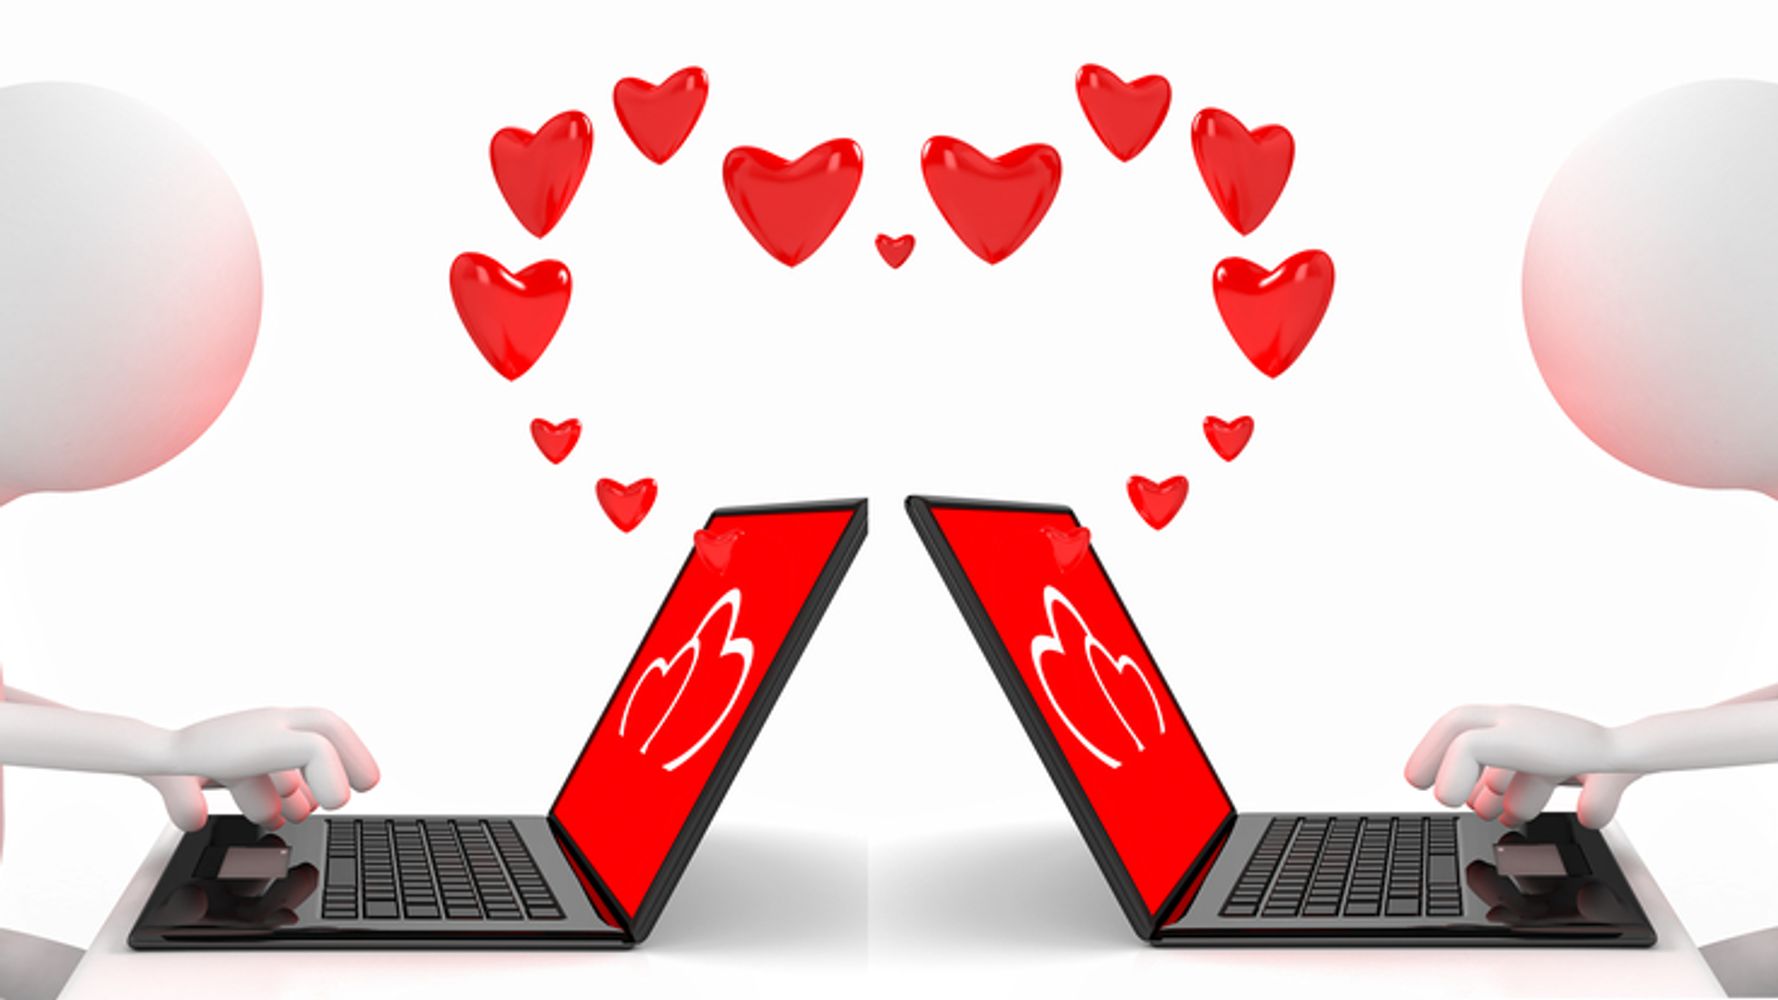 Социальная сеть познакомимся. Интернет любовь. Интернетная любовь. Виртуальная любовь в сети. Общение в интернете мультяшное изображение.